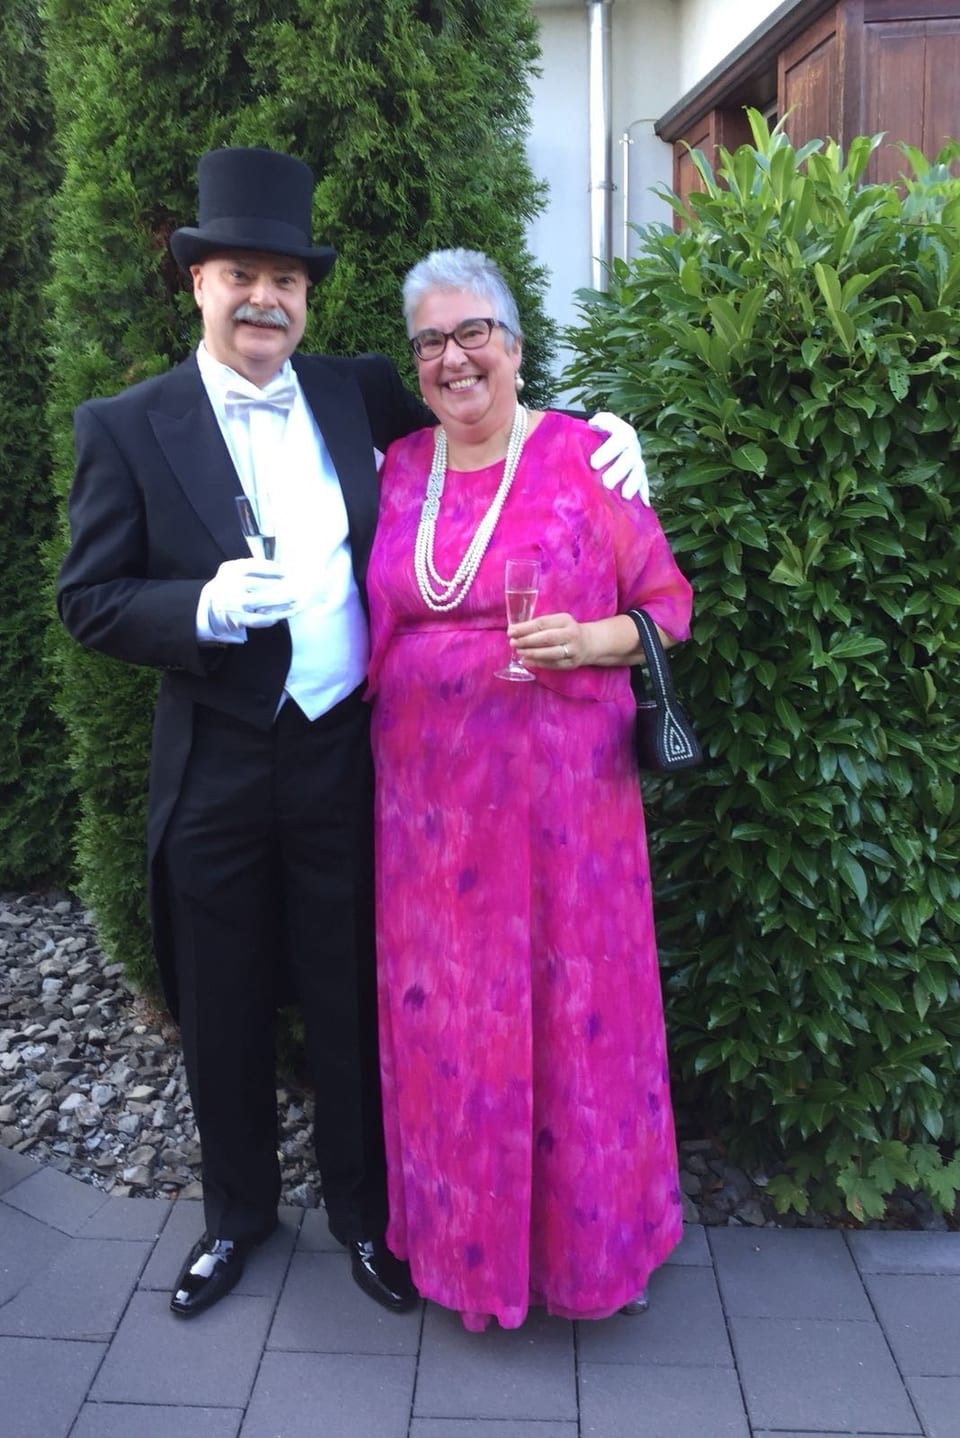 Mann mit Frack, Frau im rosaroten Kleid mit Perlenkette.